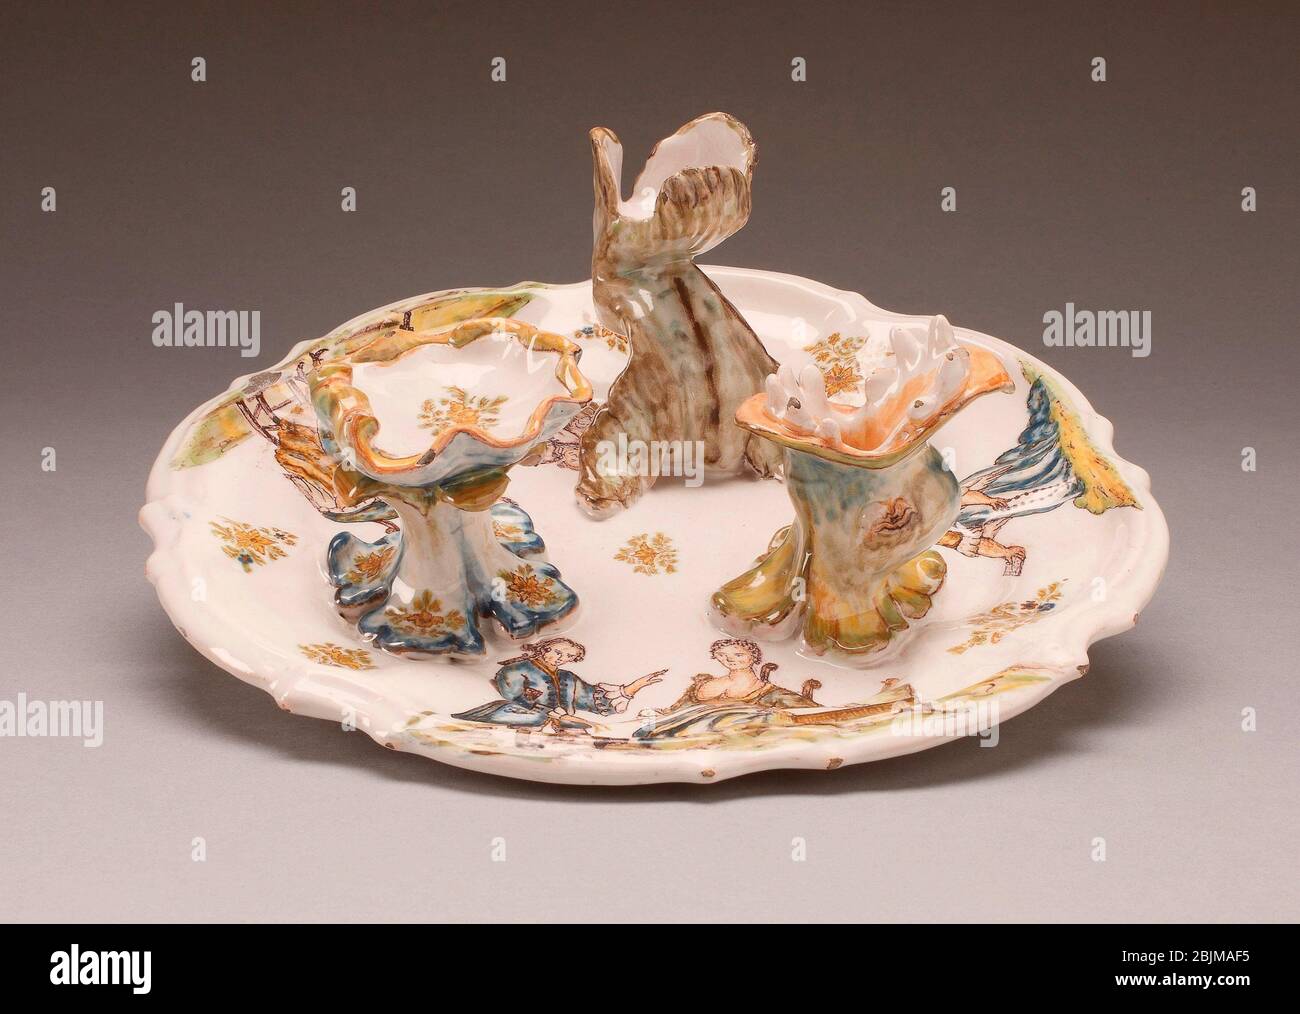 Autore: Ceramica di Alcora. Vassoio del medico - circa 1760 - ceramica di  Alcora Spagnolo, 1727-1895. Terracotta smaltata in stagno (faience).  1755'1765 Foto stock - Alamy